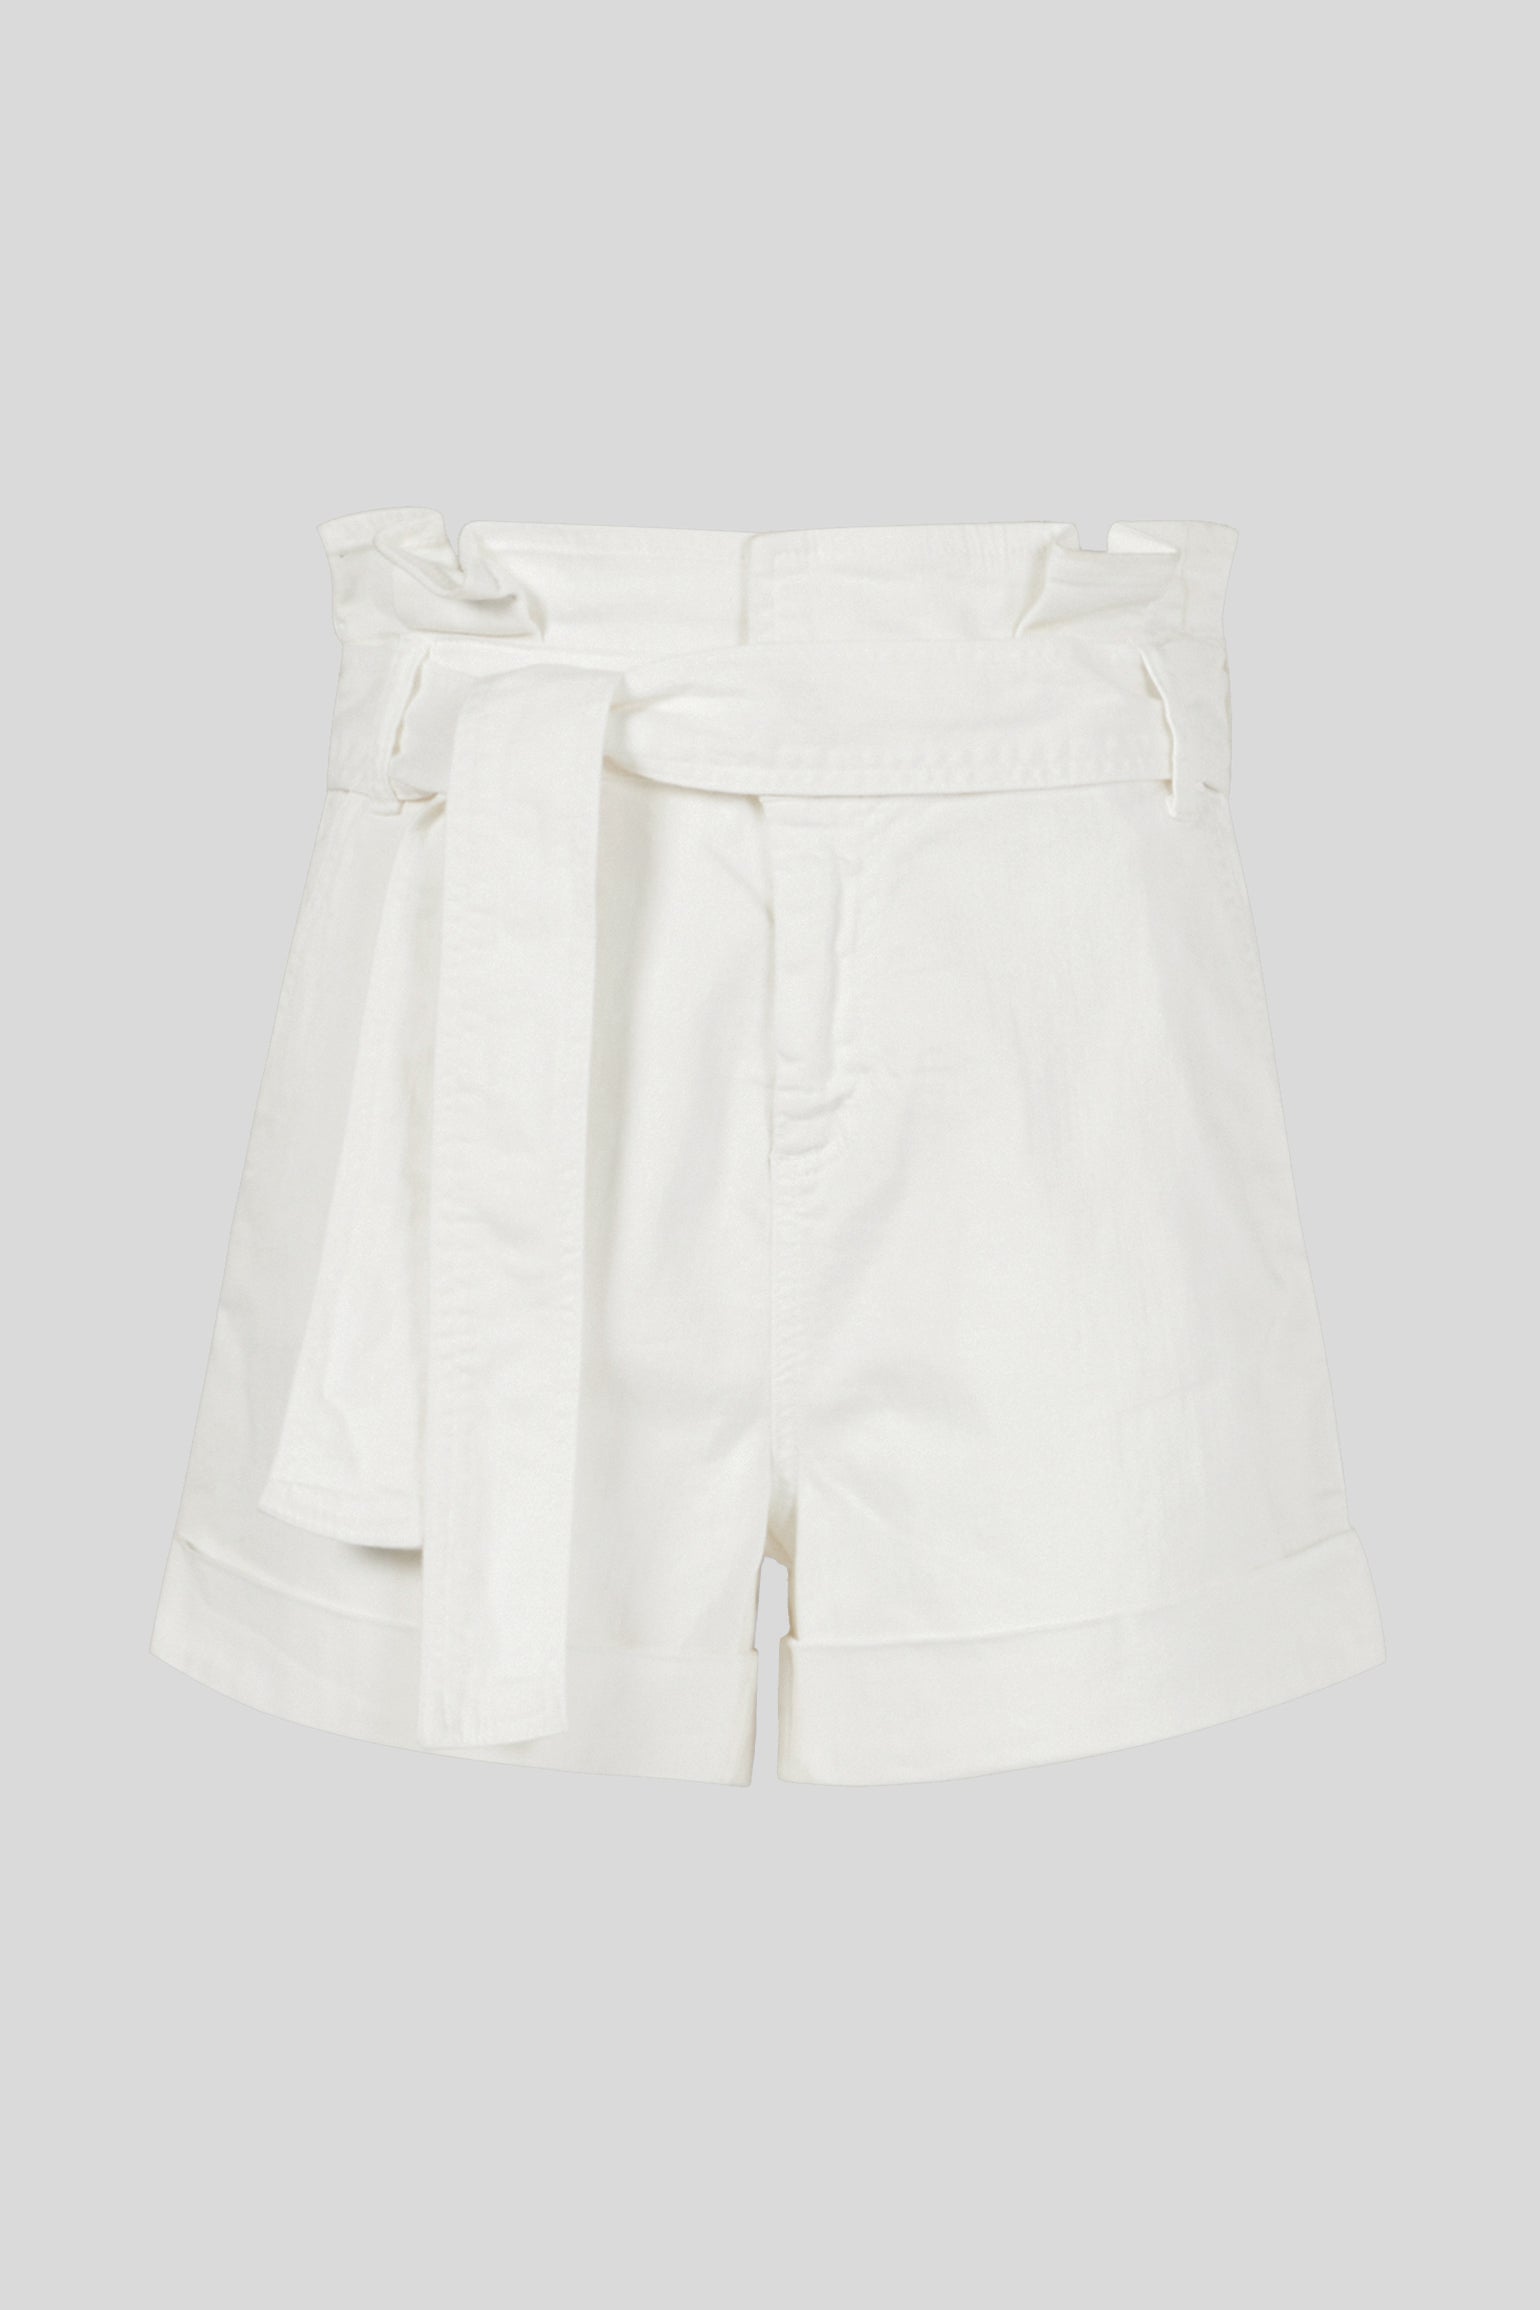 LIU JO White Denim Shorts